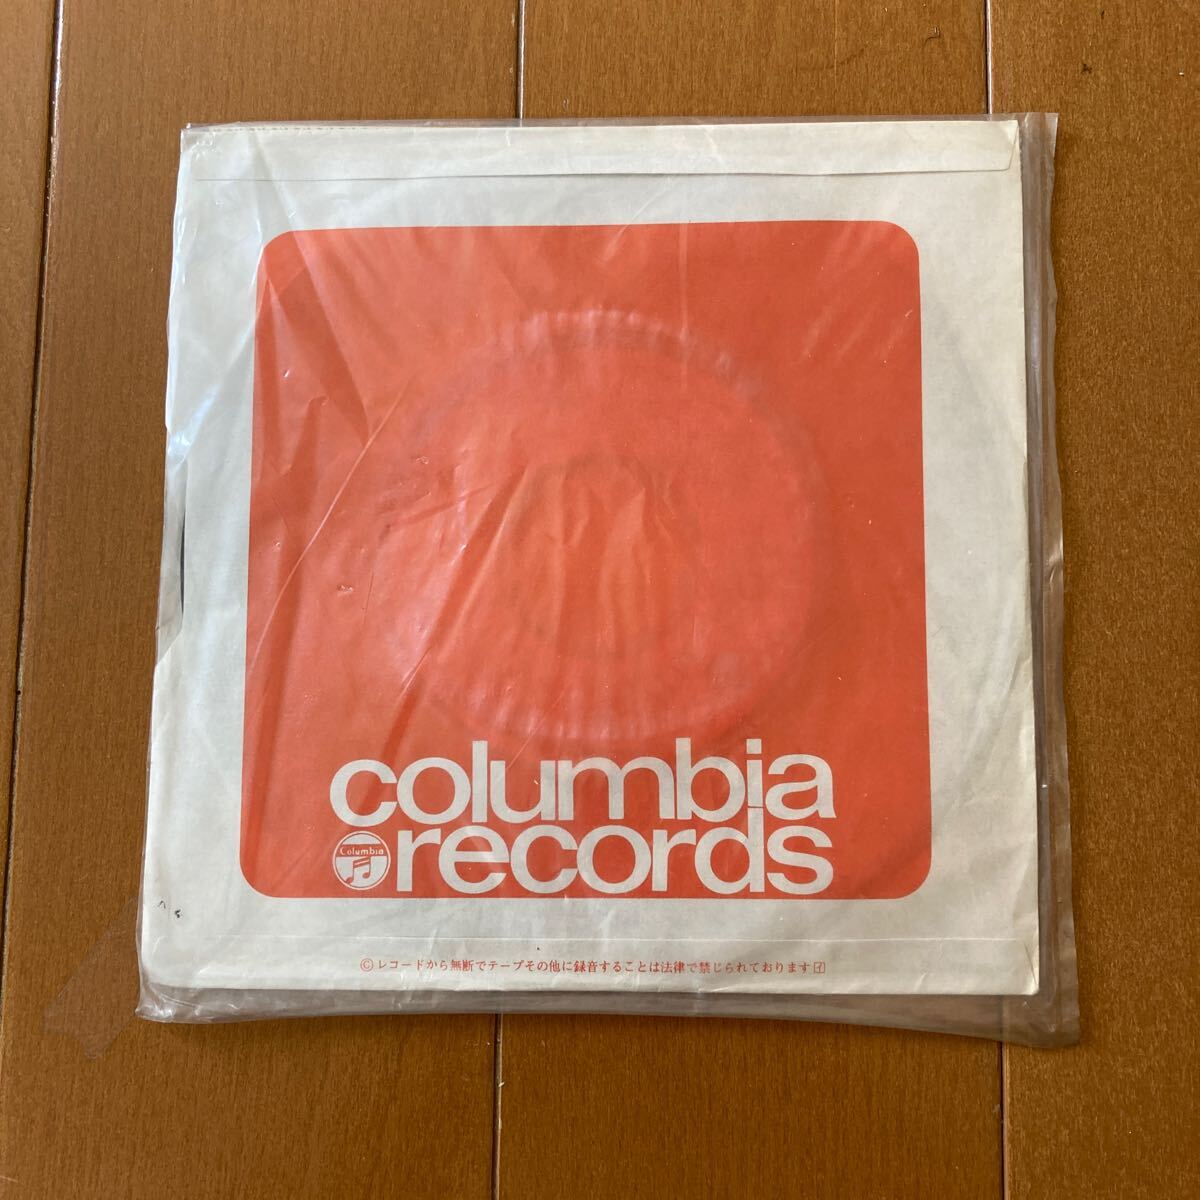 ※05 レコード店在庫品 未使用品 内藤はるみ 「光がこぼれる街で」 EP盤レコード COLUMBIA SCS-209